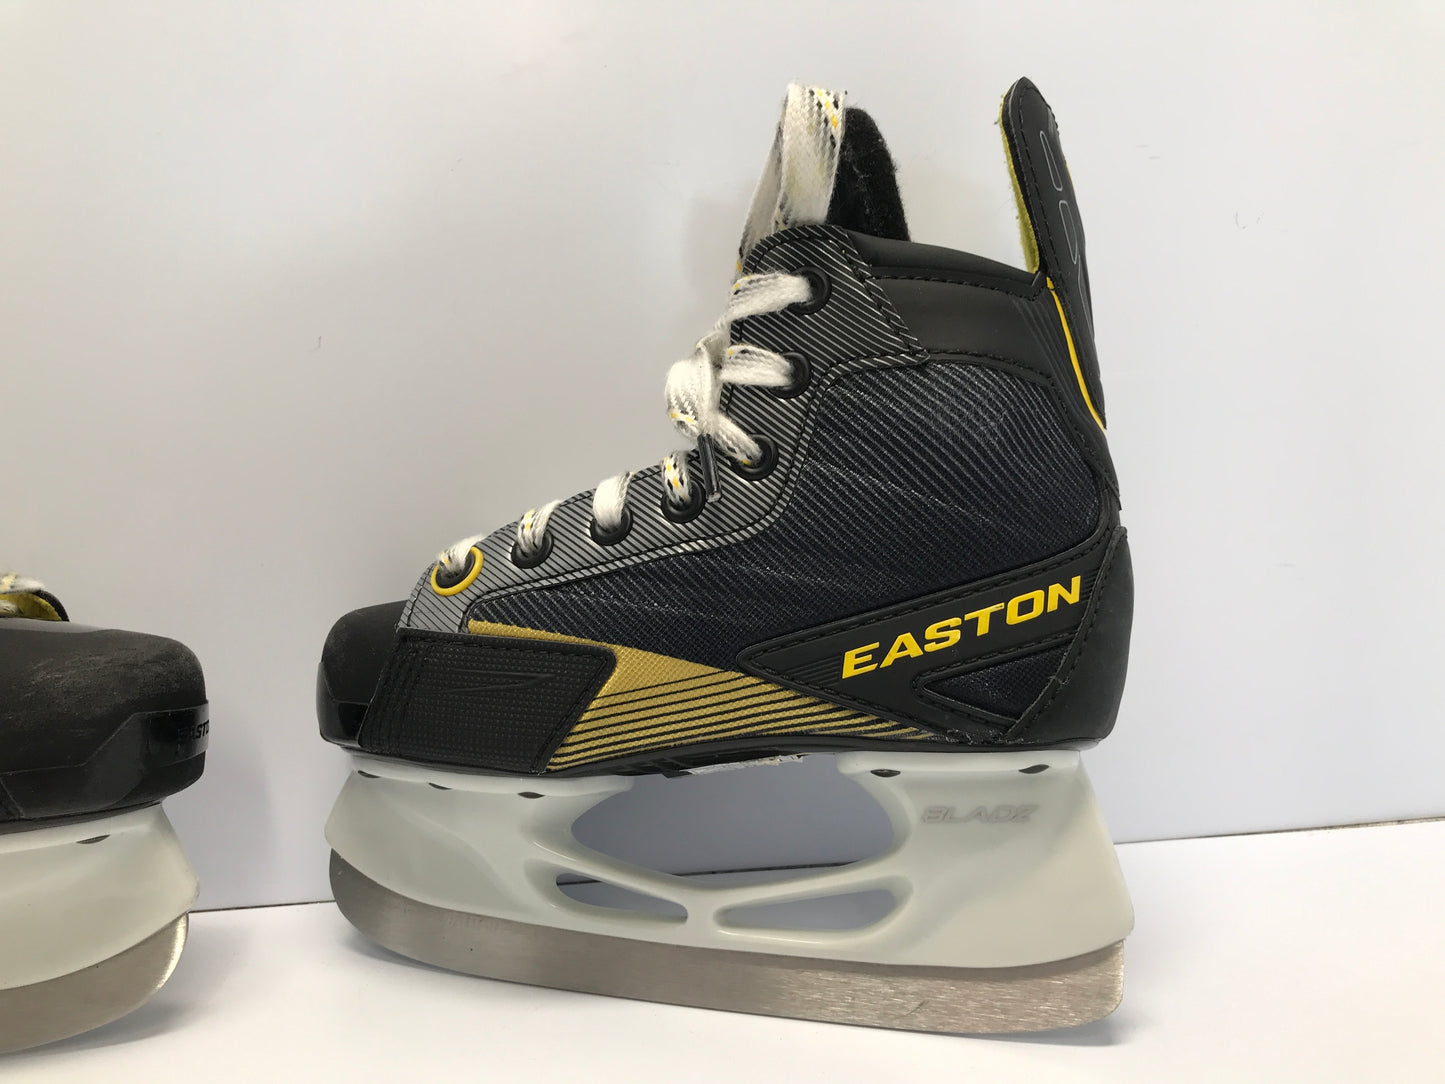 Hockey Skates Easton First Response Child Size 12.5 Shoe Size Skates Size 11.5 Like New